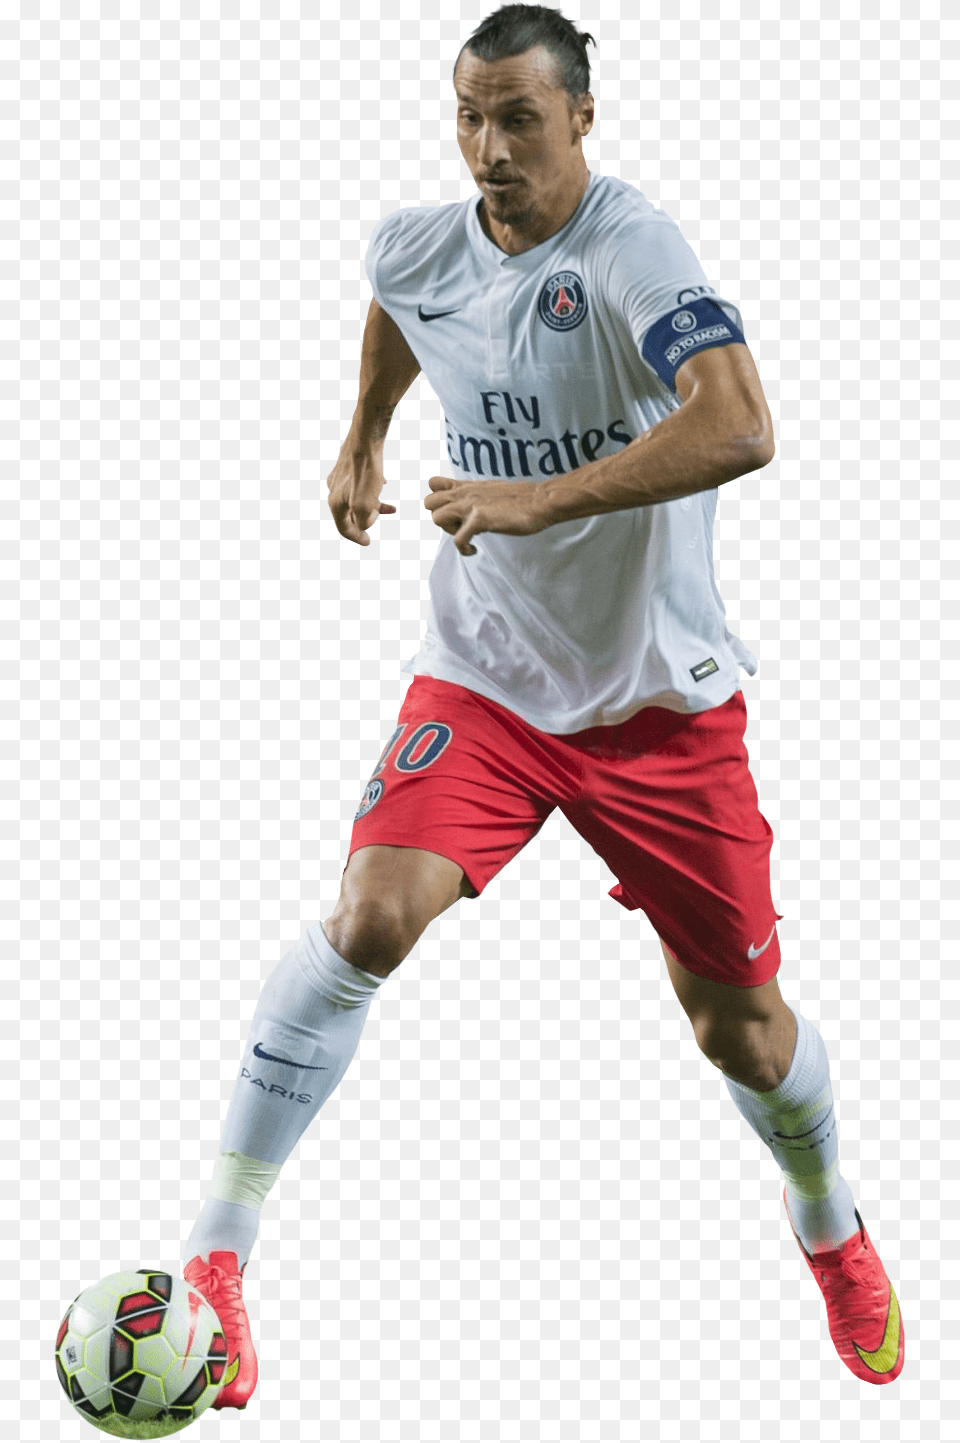 Zlatan Ibrahimovic Psg Zlatan Ibrahimovic Sin Fondo, Ball, Sport, Soccer Ball, Soccer Free Png Download